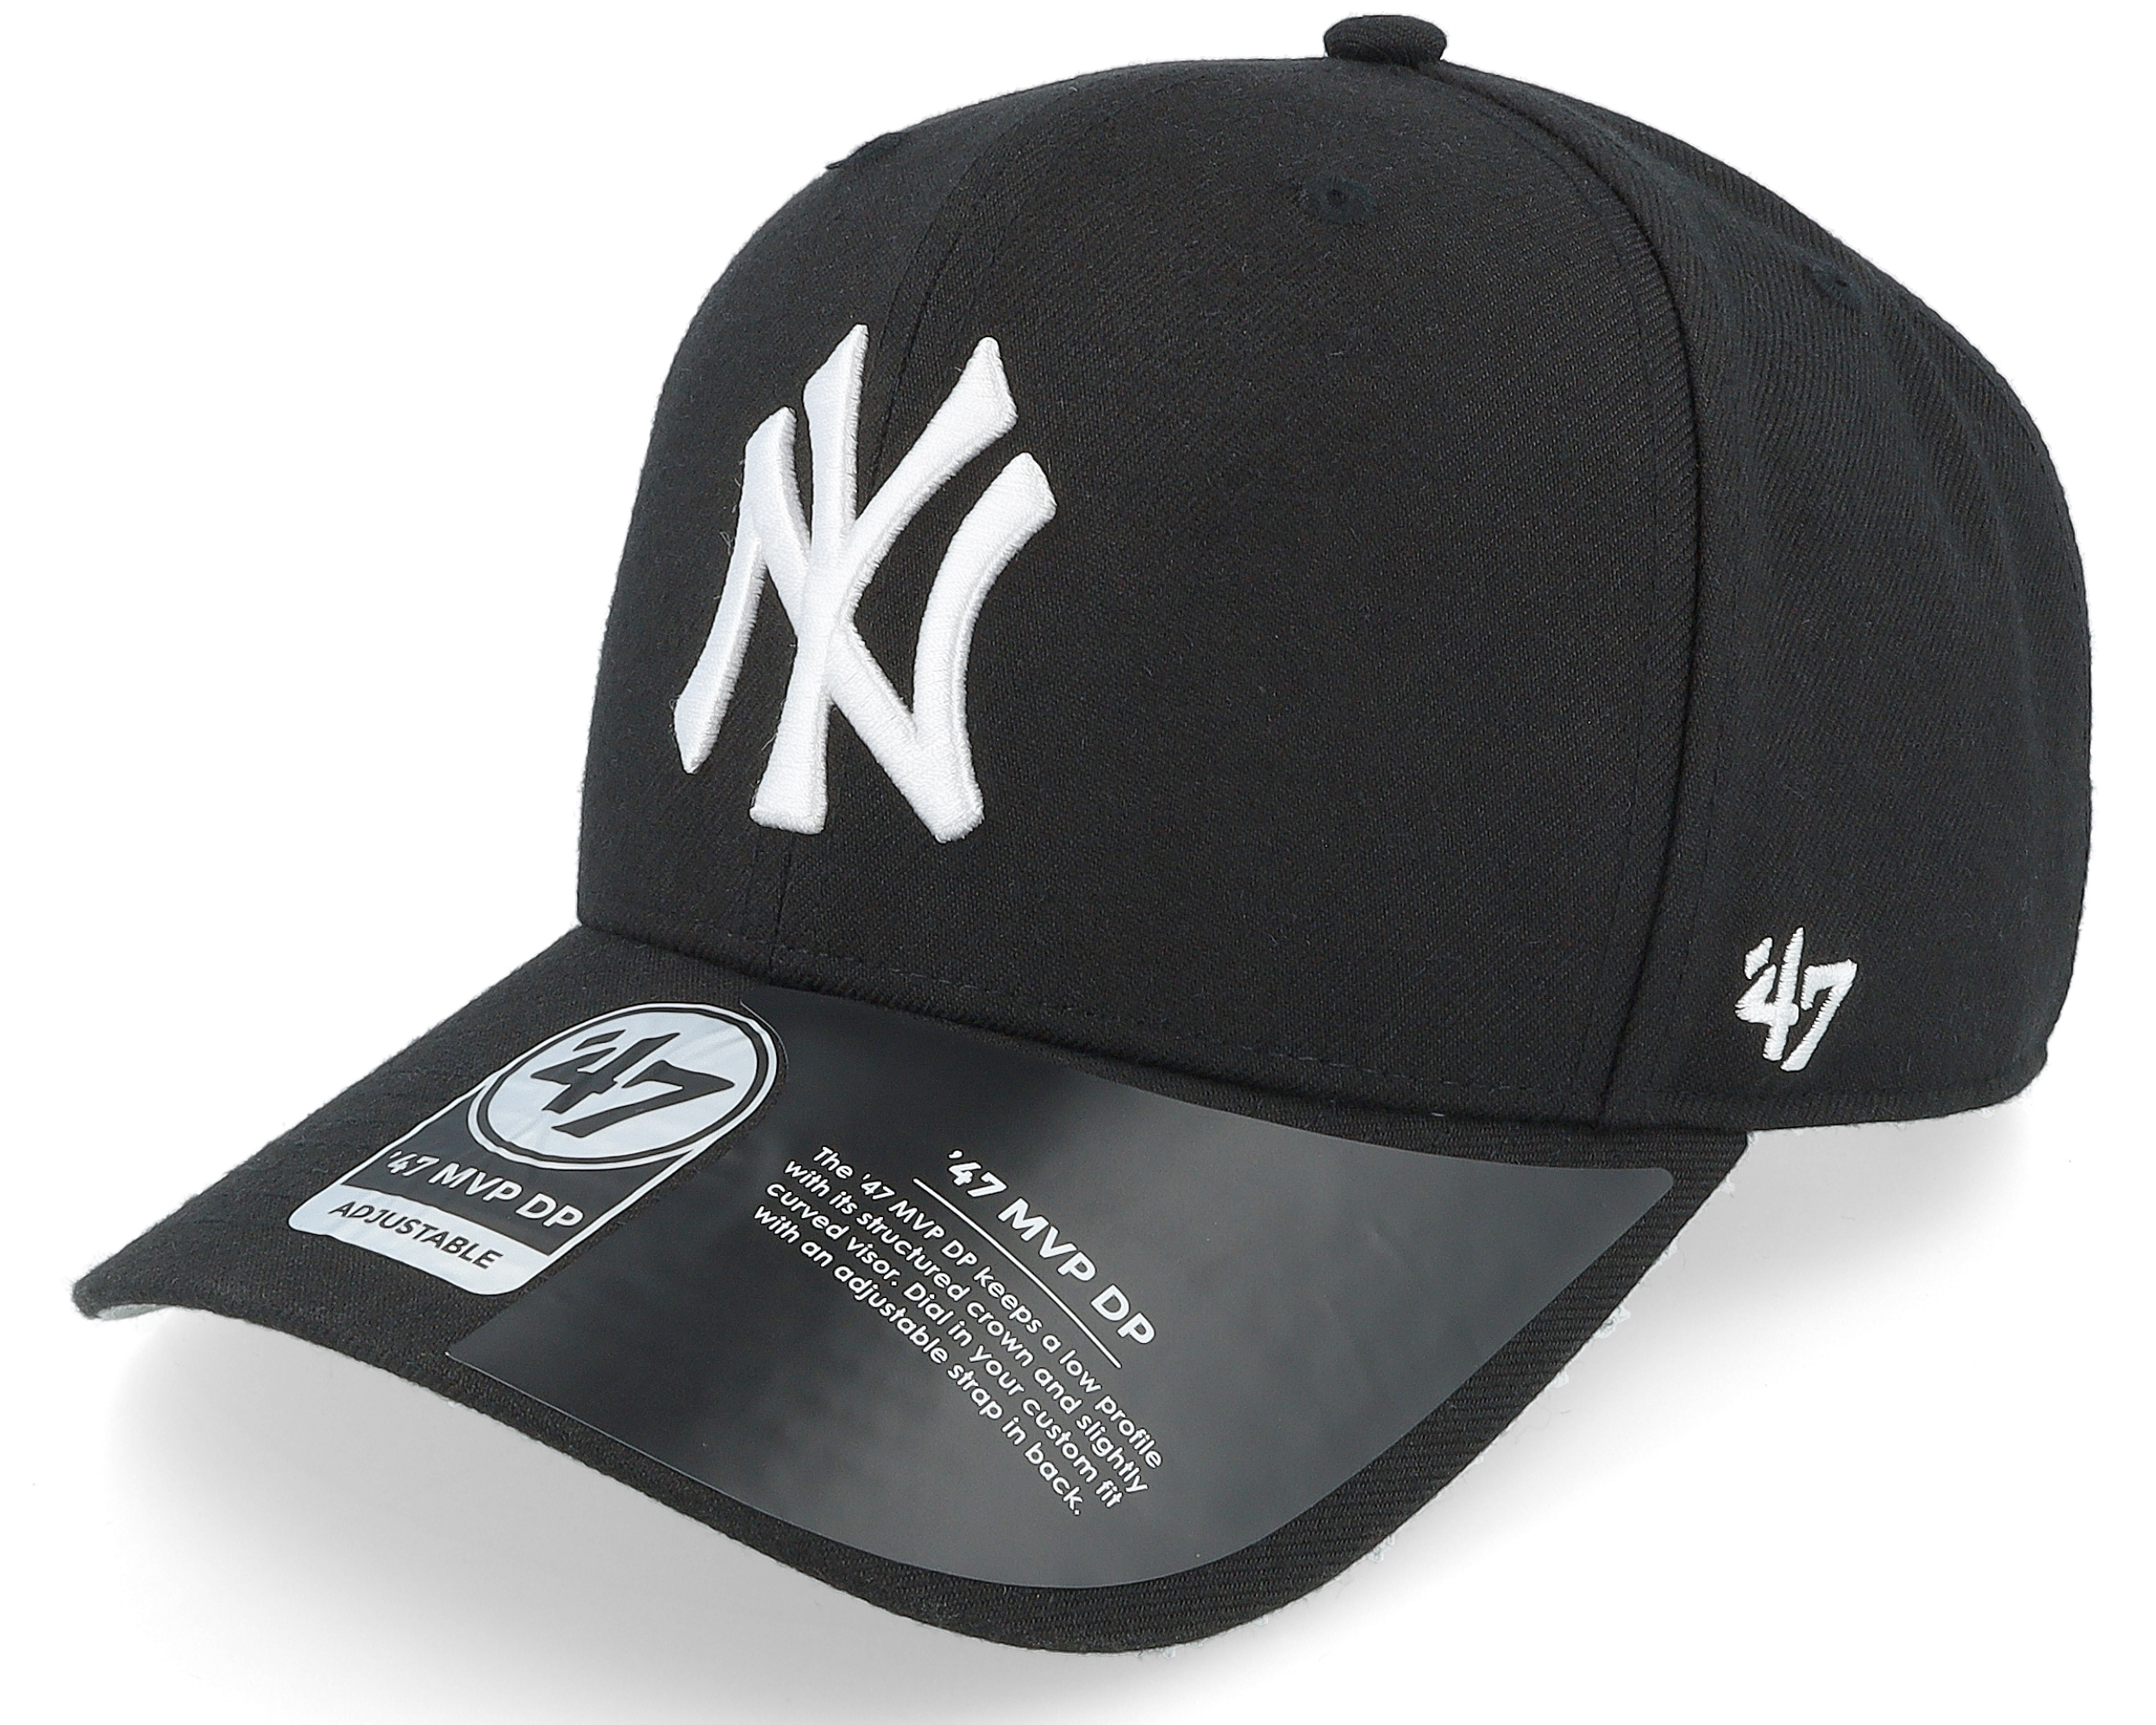 Gorra curva blanca snapback de New York Yankees MLB MVP de 47 Brand